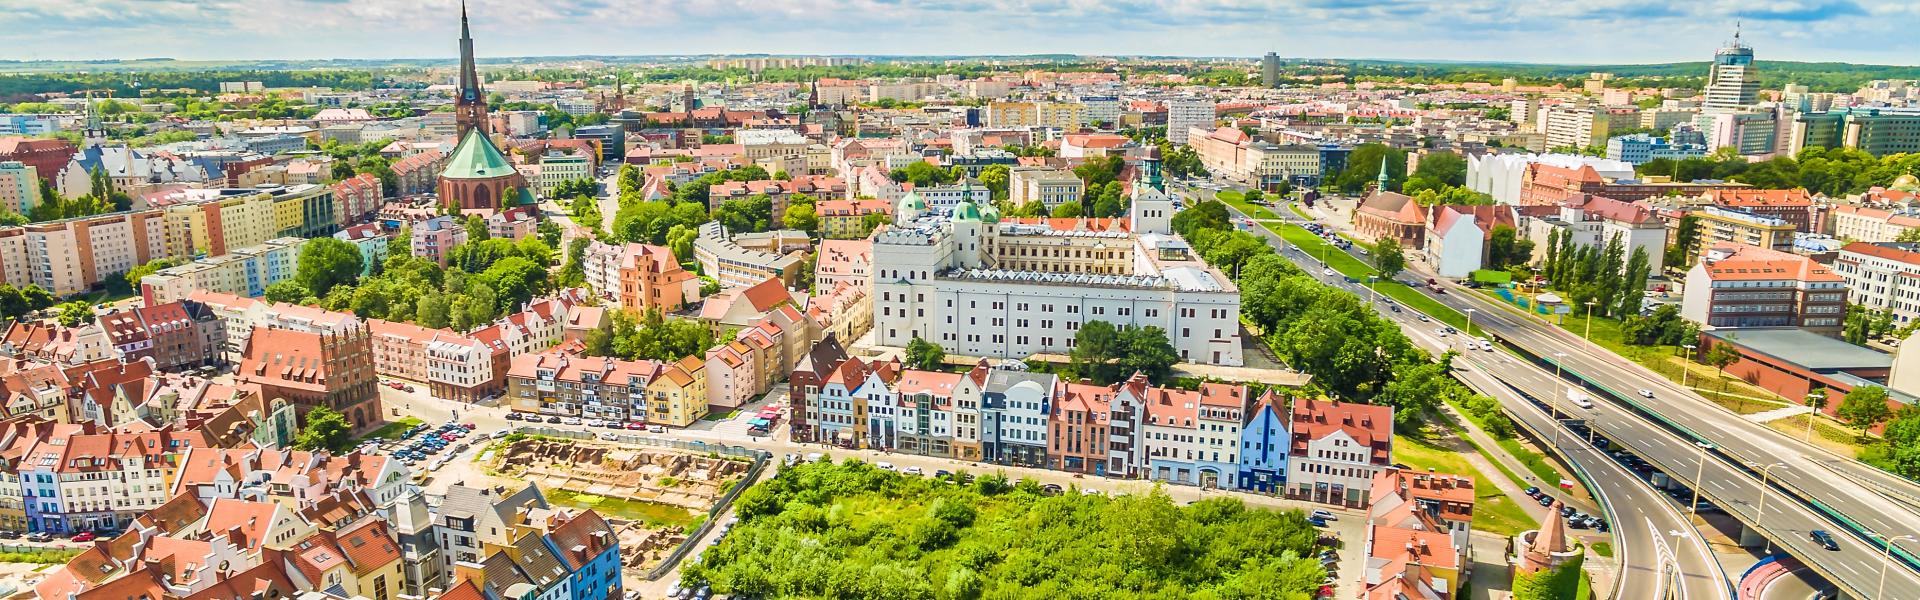 Noclegi i apartamenty wakacyjne w Szczecinie - Casamundo